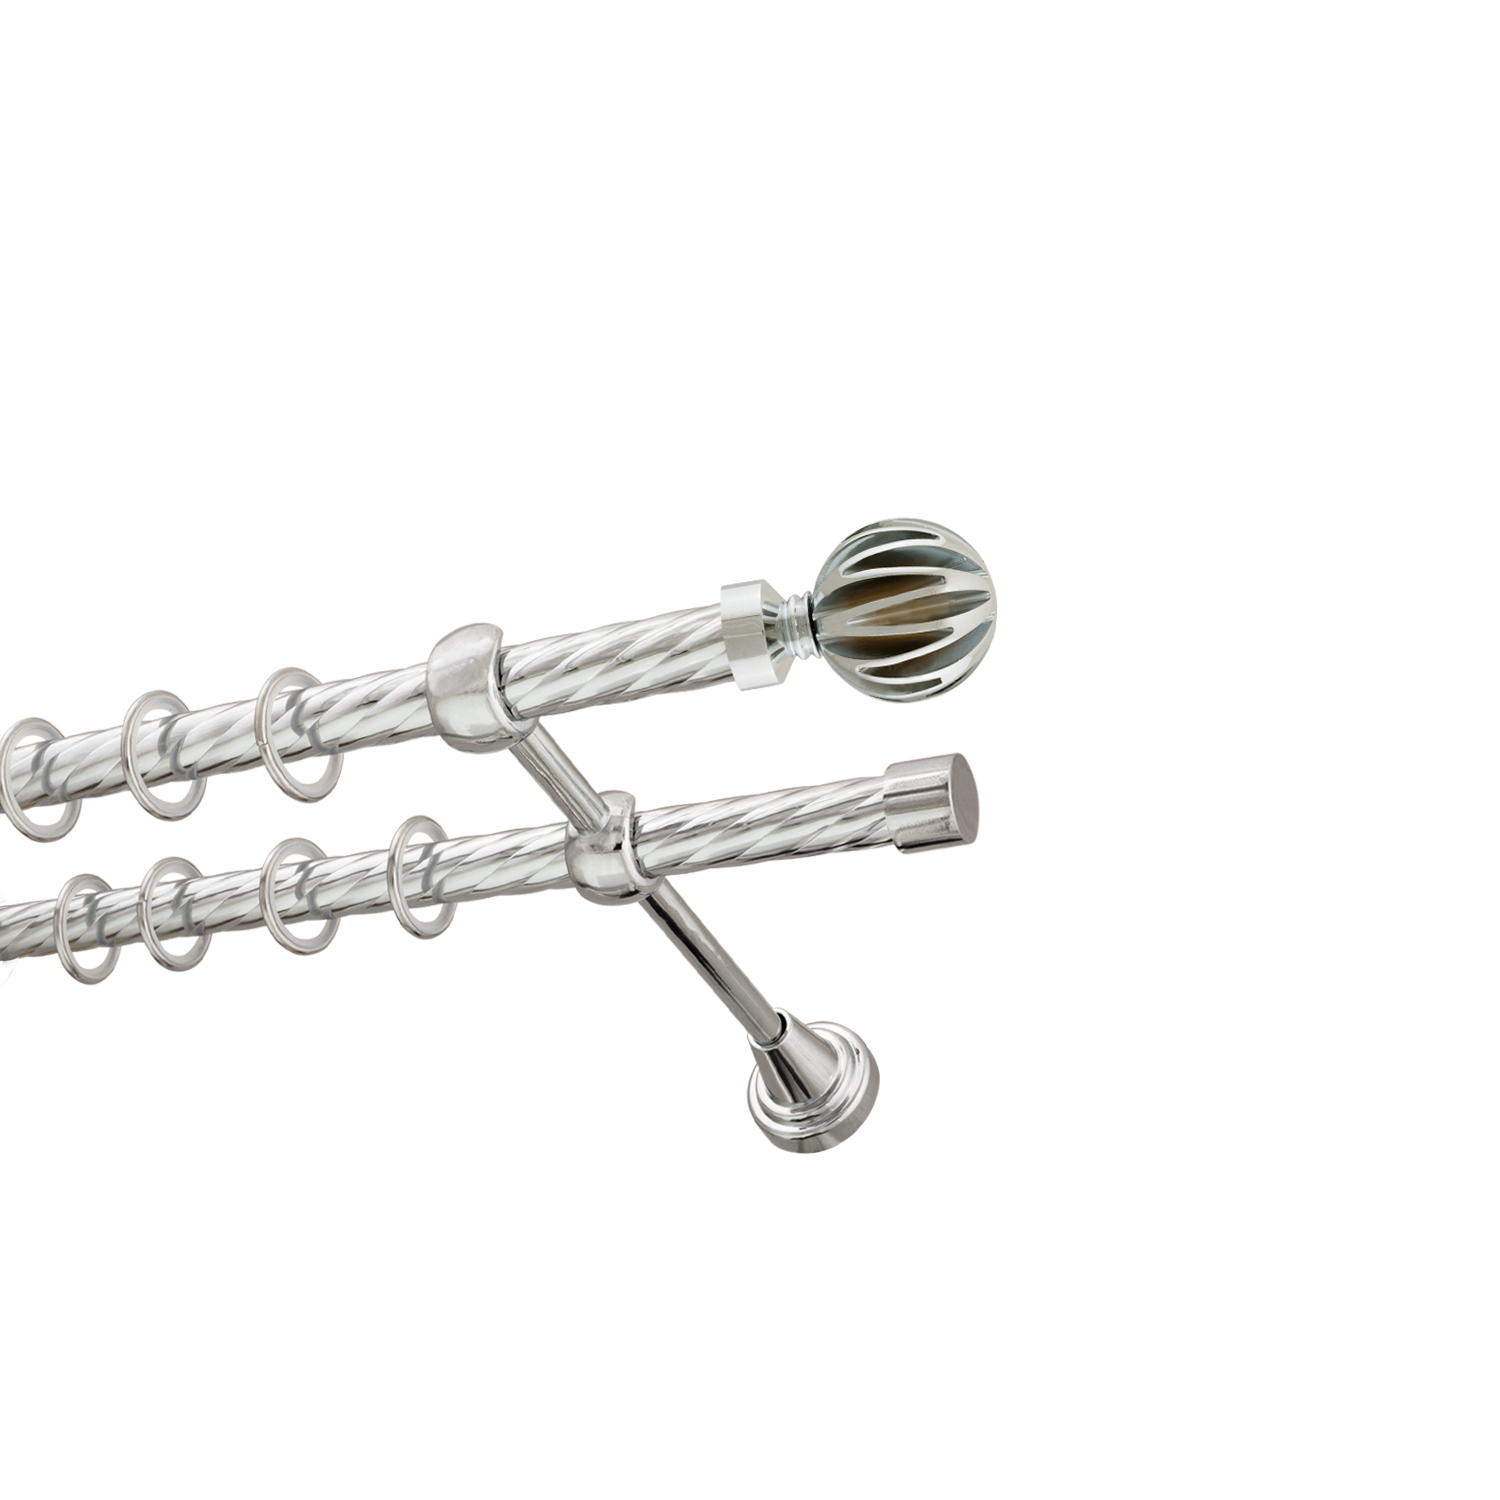 Металлический карниз для штор Шафран, двухрядный 16/16 мм, серебро, витая штанга, длина 180 см